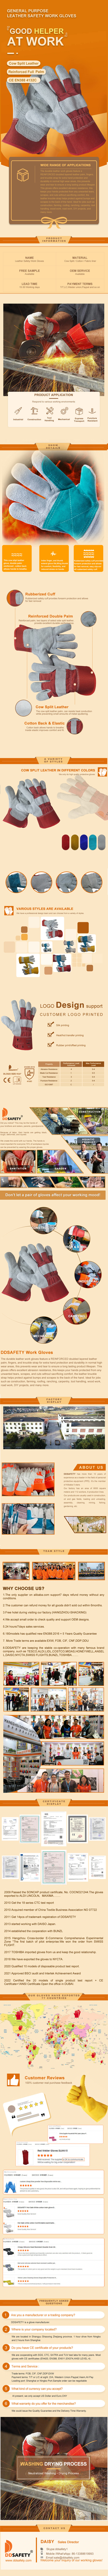 Leather Palm Gloves - DLC623 Leather Palm Gloves - DLC623 gloves,leather gloves,Leather Palm Gloves